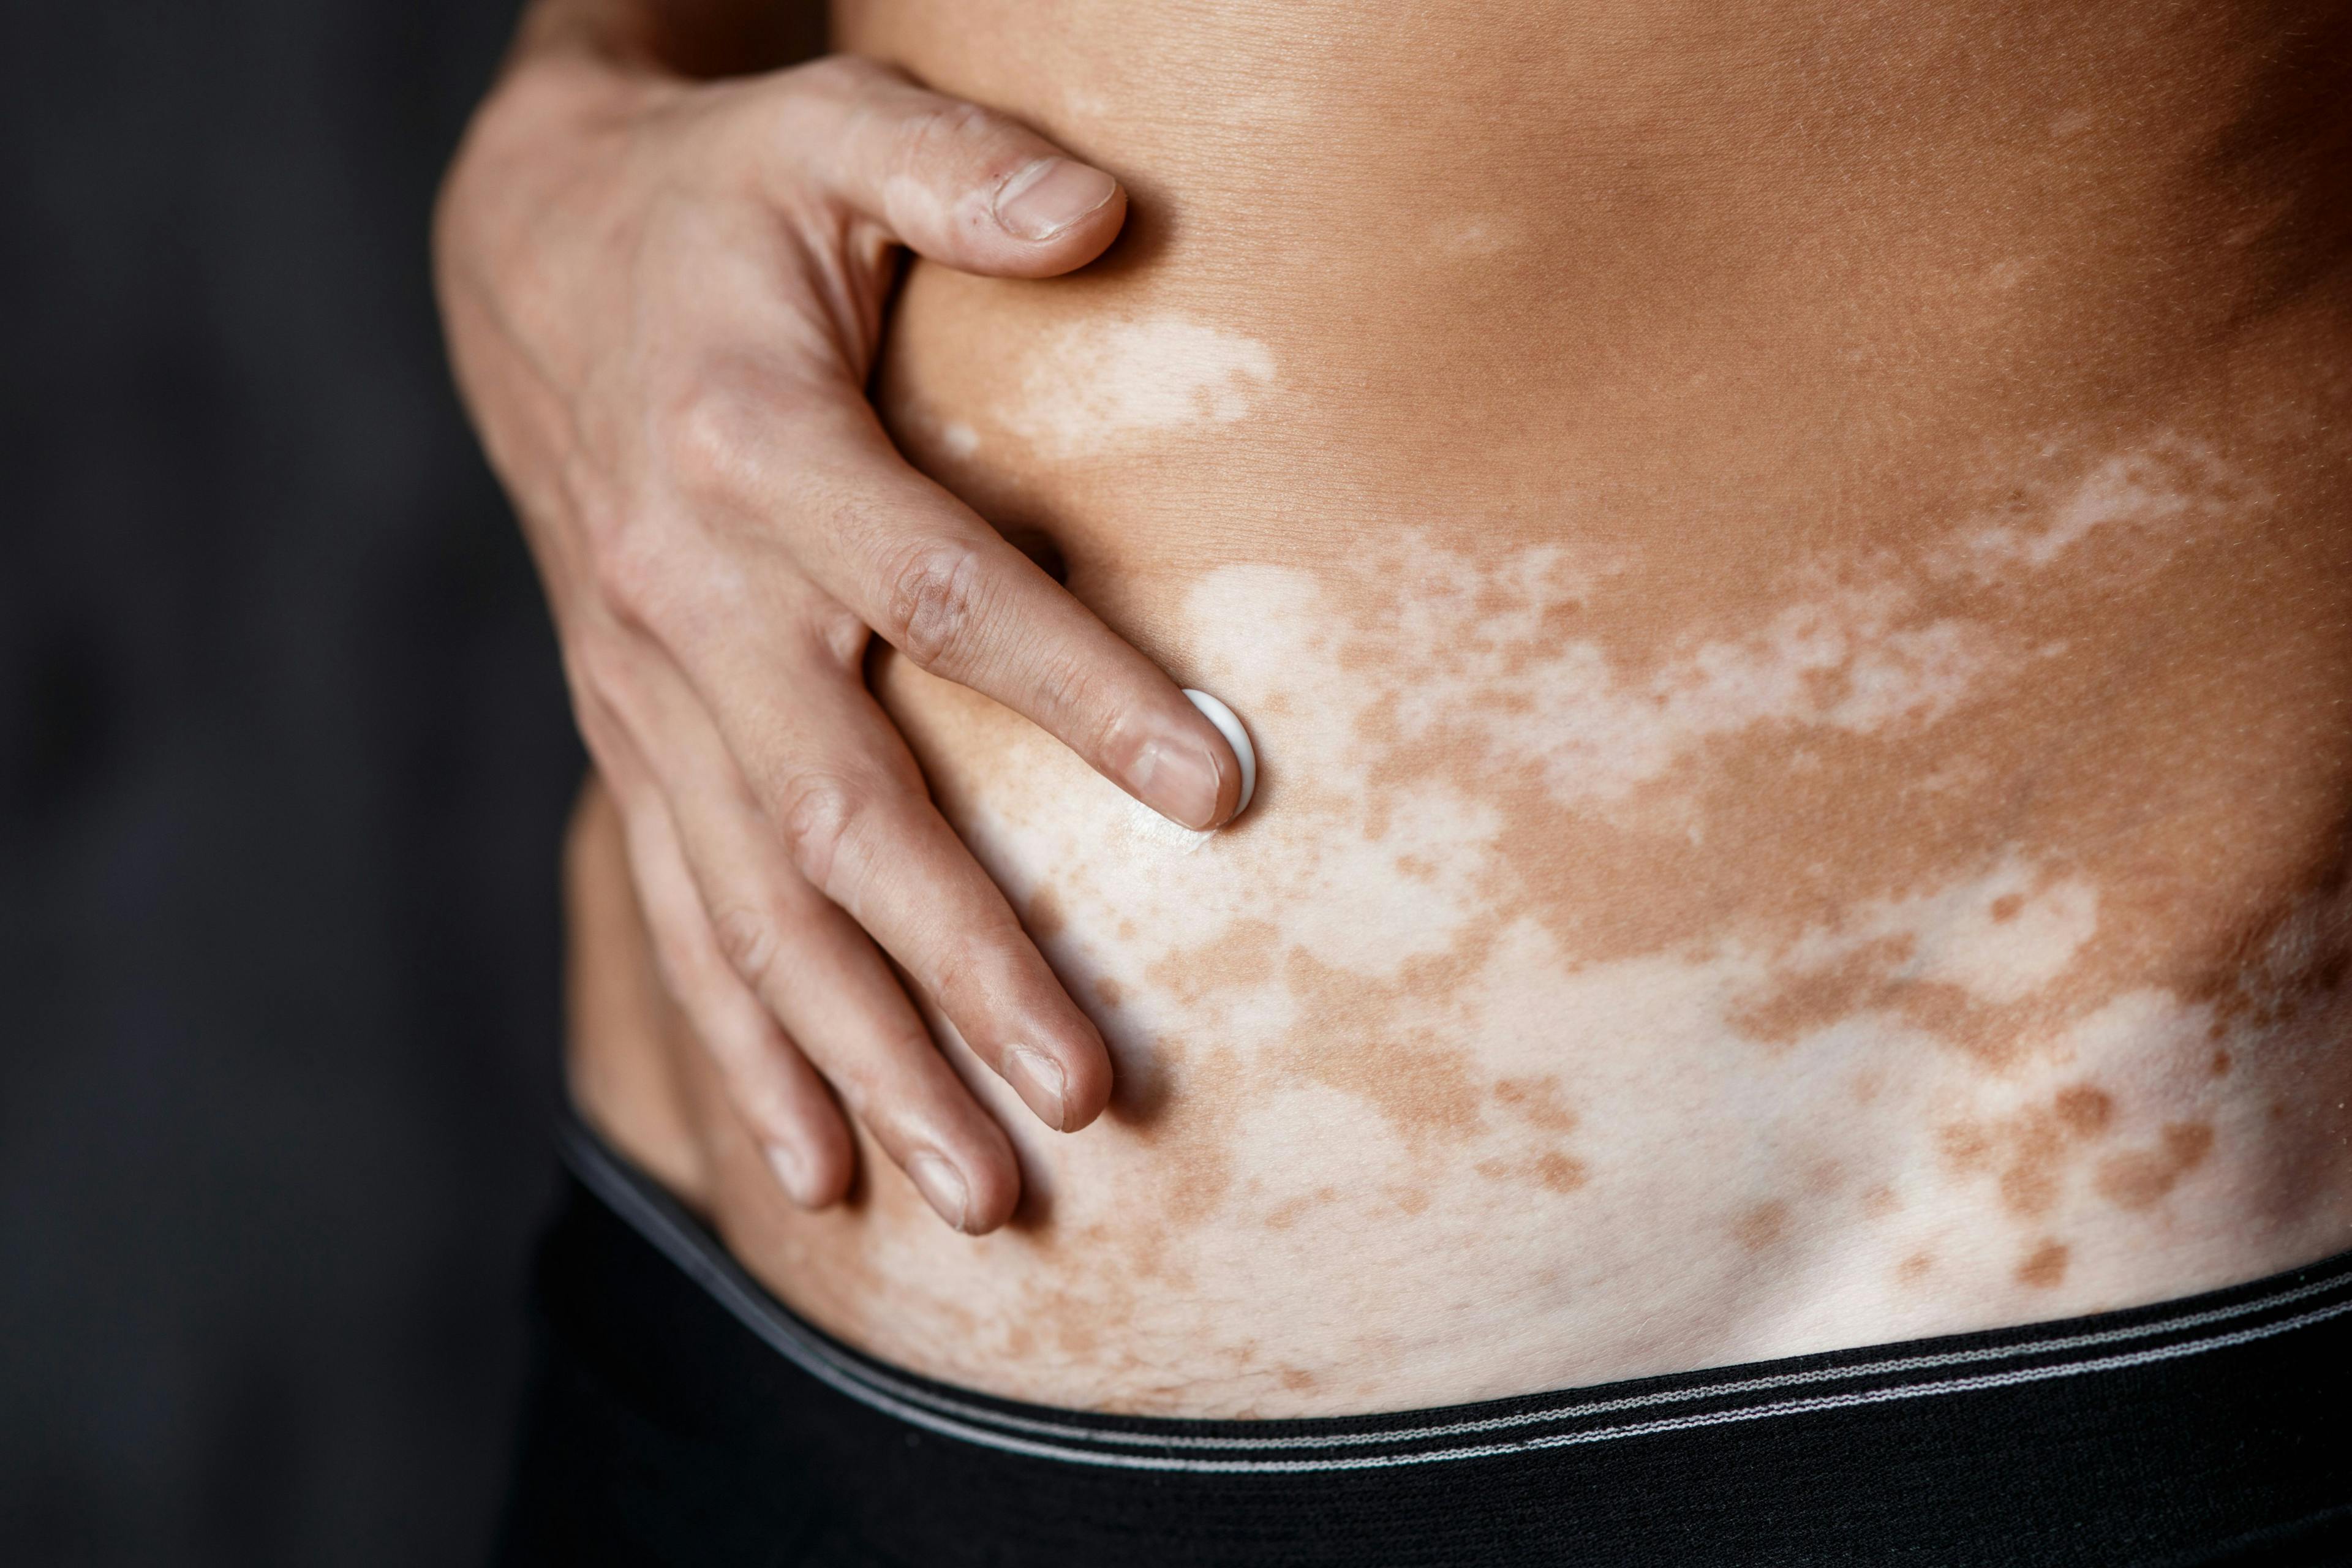 Person with vitiligo applies topical cream to stomach